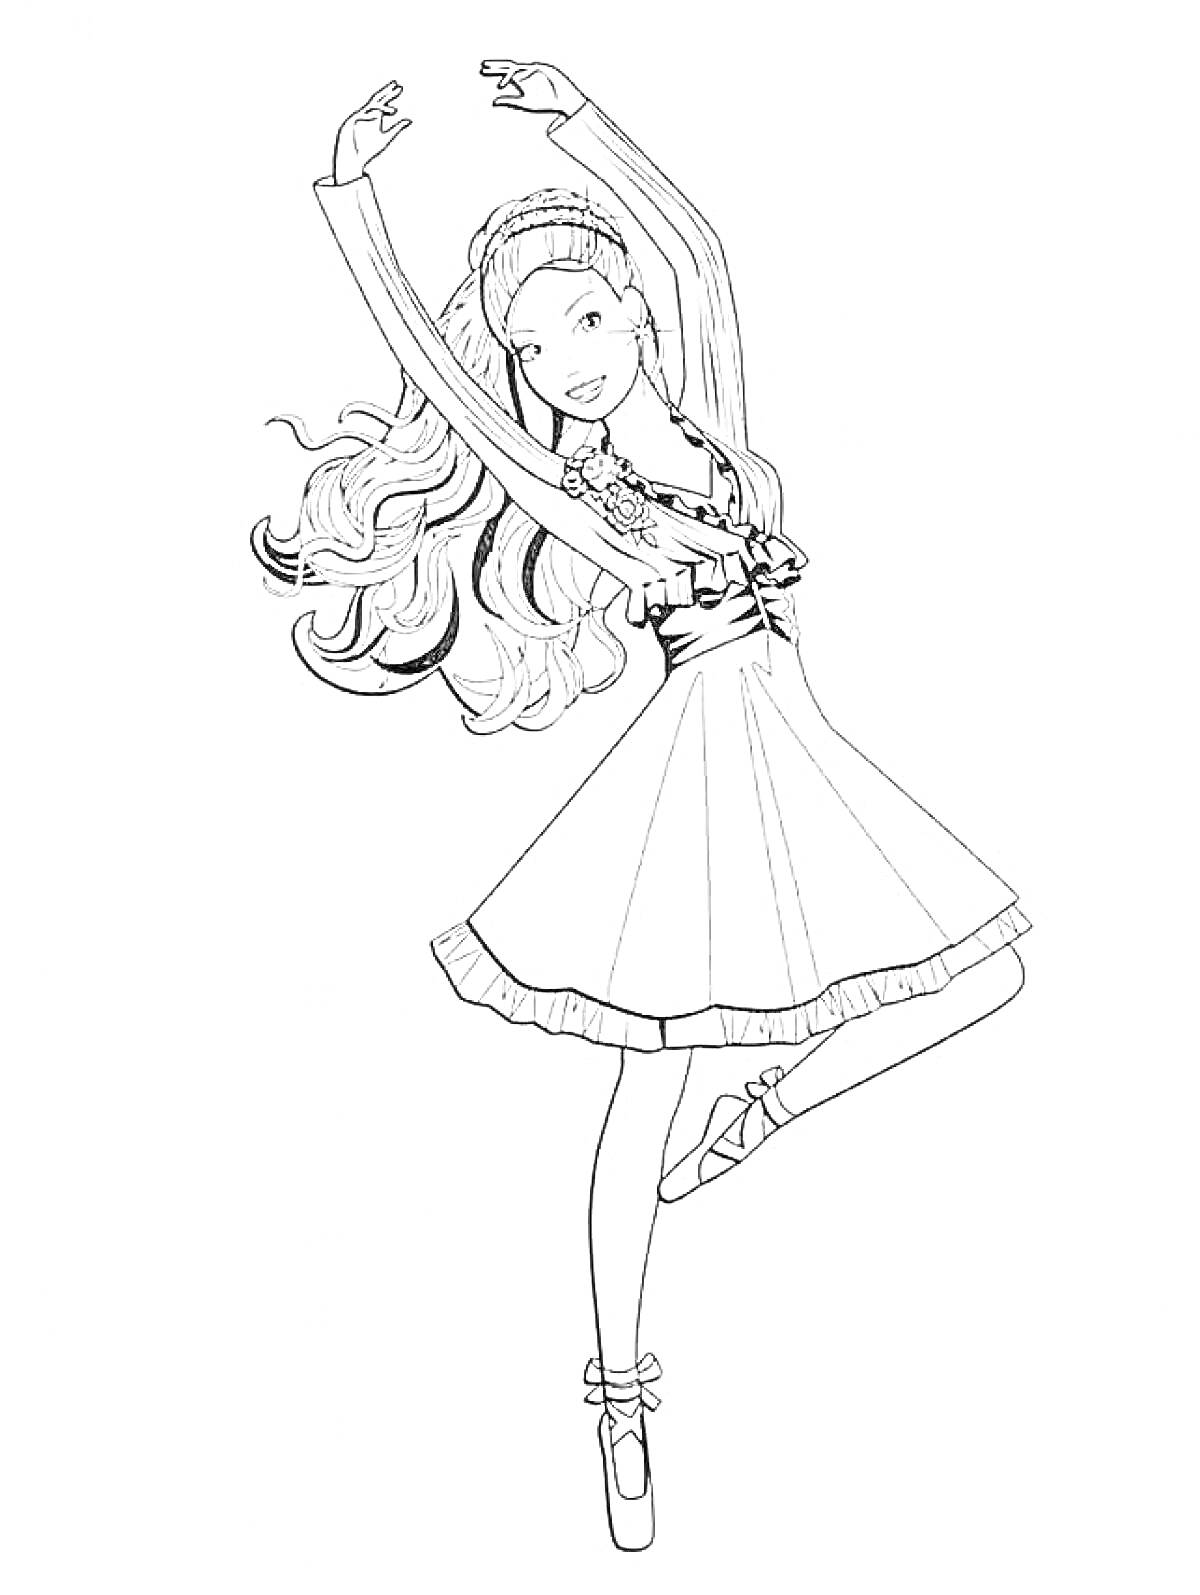 Раскраска Балерина с длинными волосами, в балетной пачке, стоящая на пуантах и поднявшая руки вверх